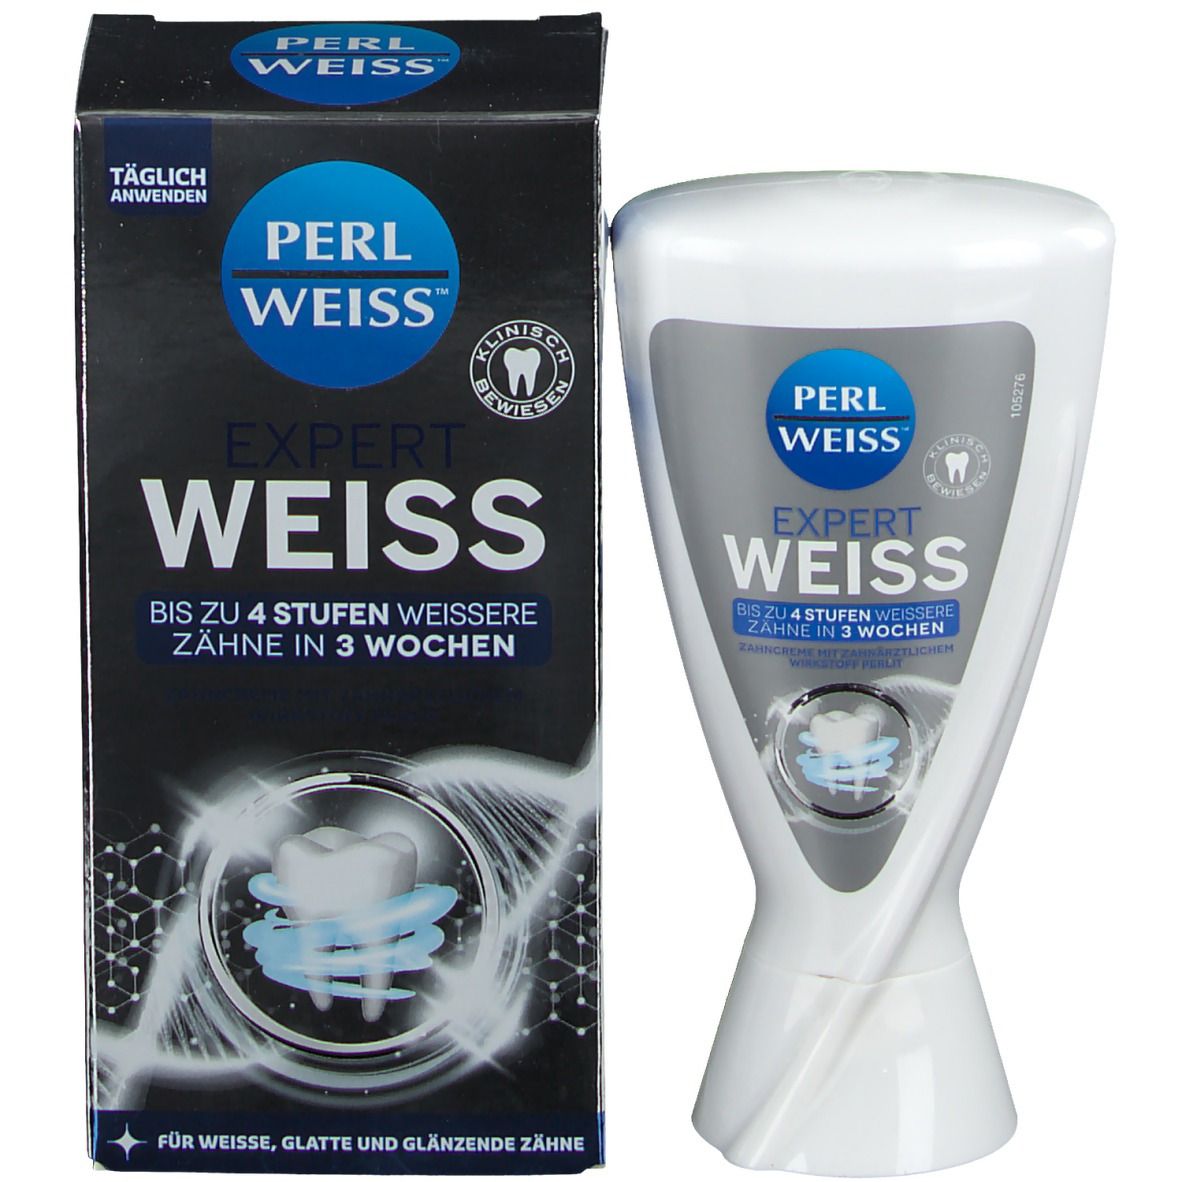 PERLWEISS® Expert Weiss